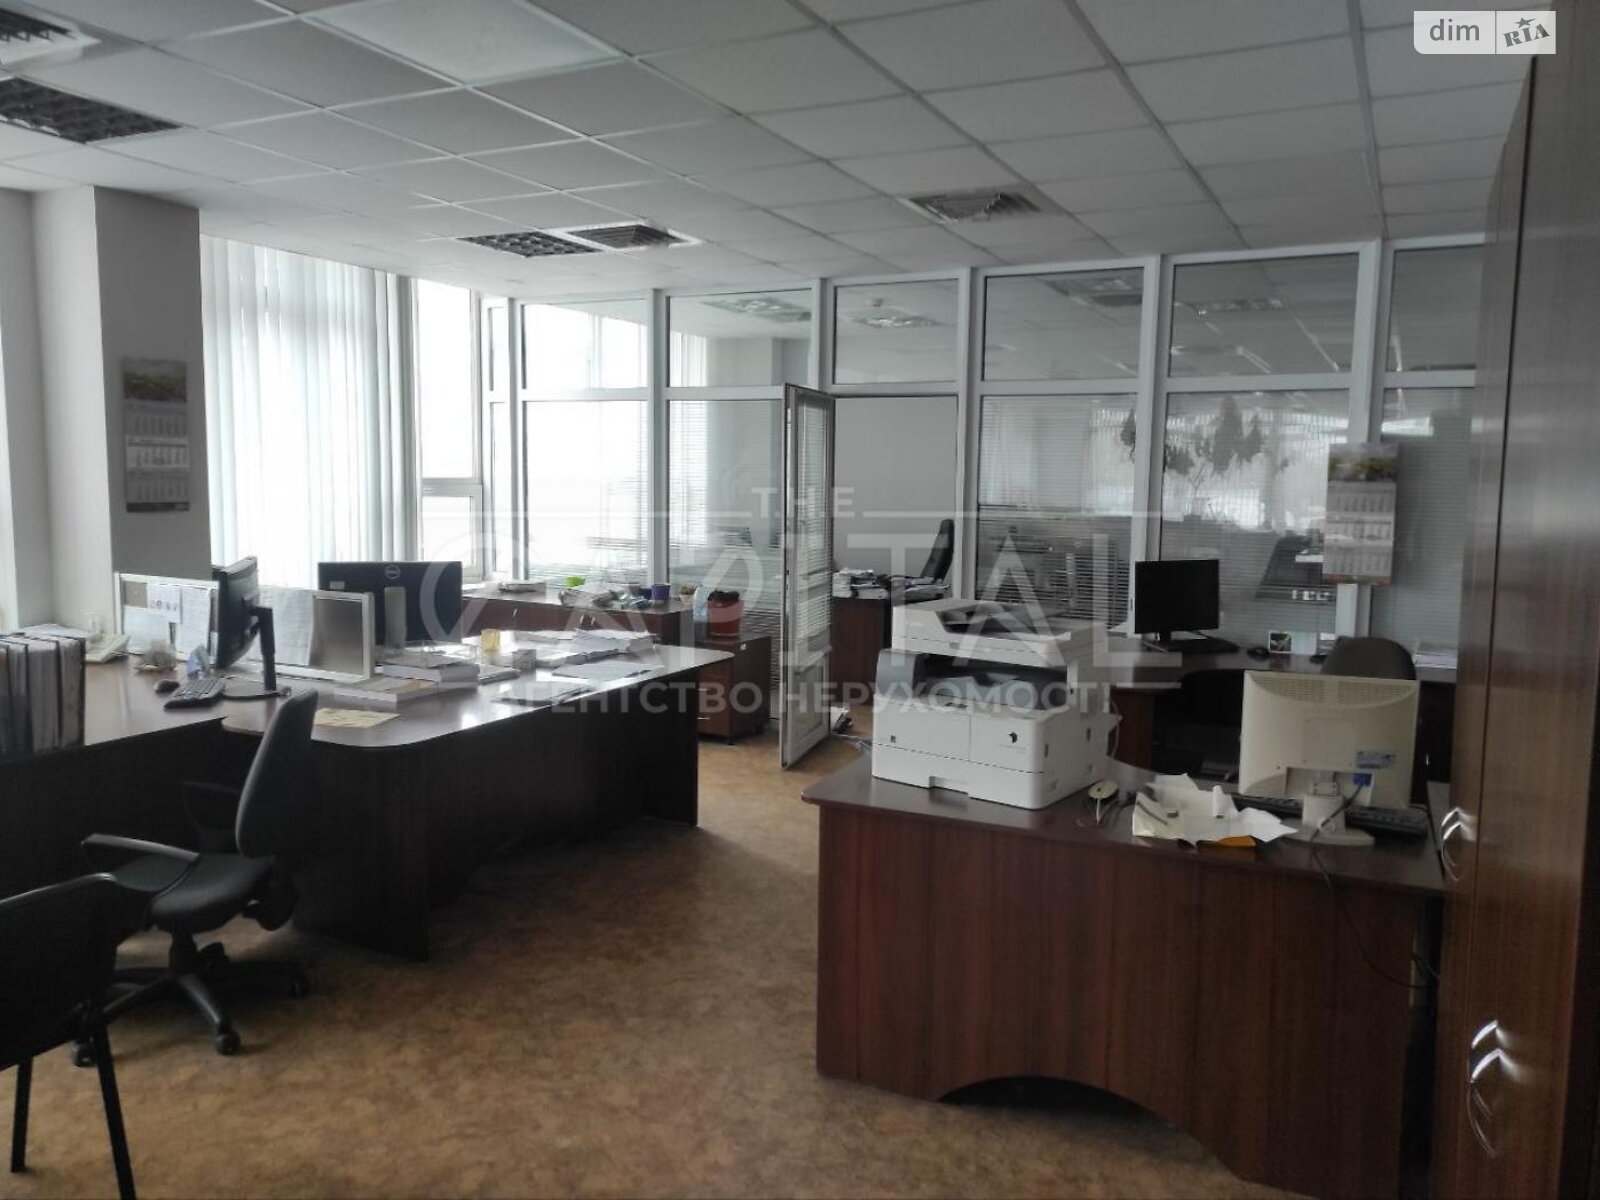 Аренда офисного помещения в Киеве, Кудрявский спуск 7, помещений - 2, этаж - 6 фото 1